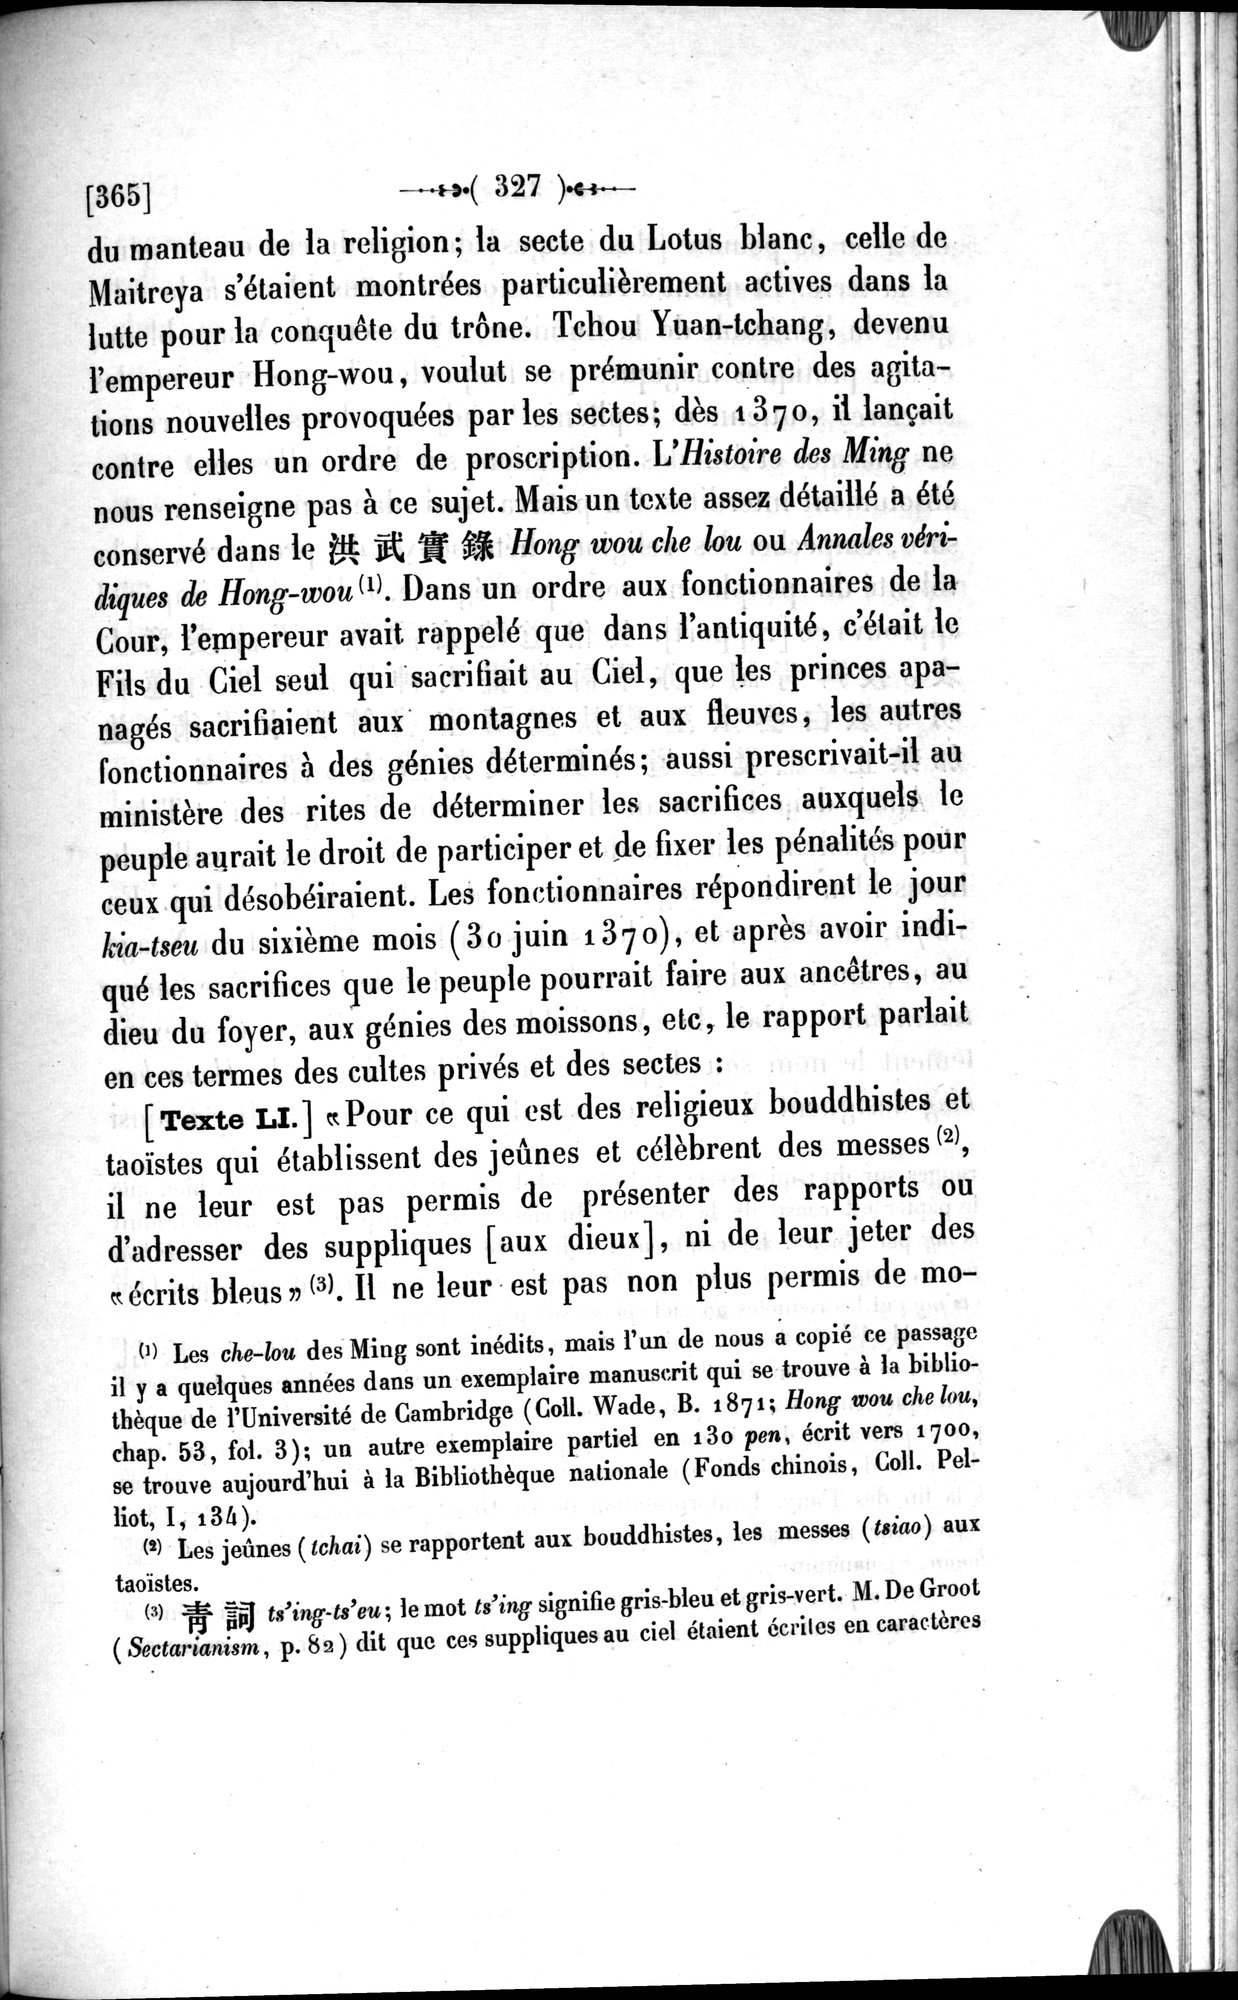 Un traité manichéen retrouvé en Chine : vol.1 / Page 337 (Grayscale High Resolution Image)